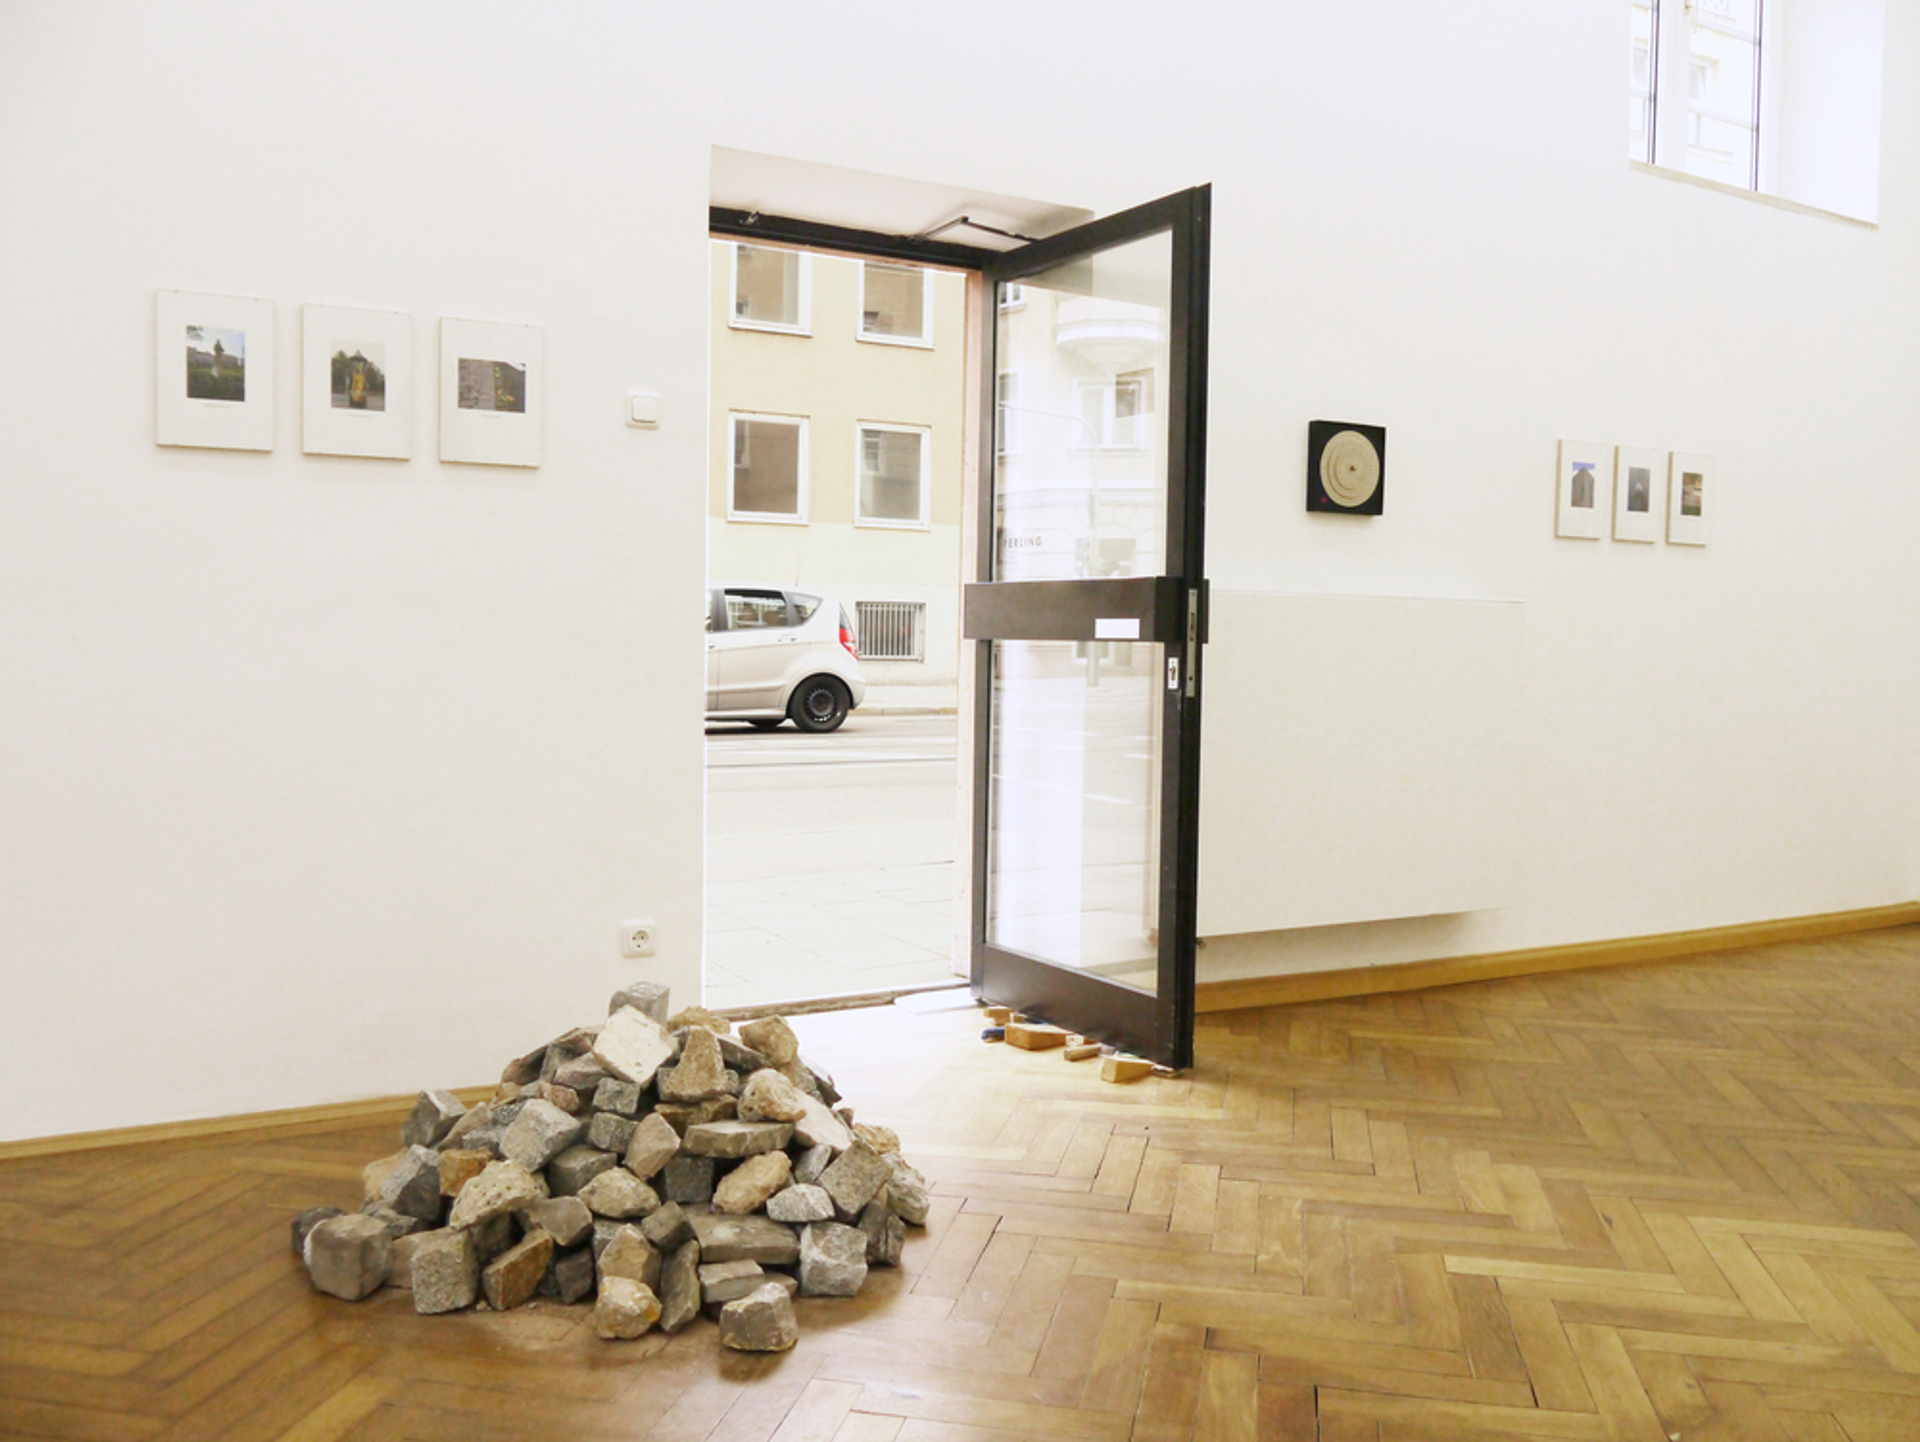 Installation view: Thomas Geiger, “Skulptürchen”, 2015